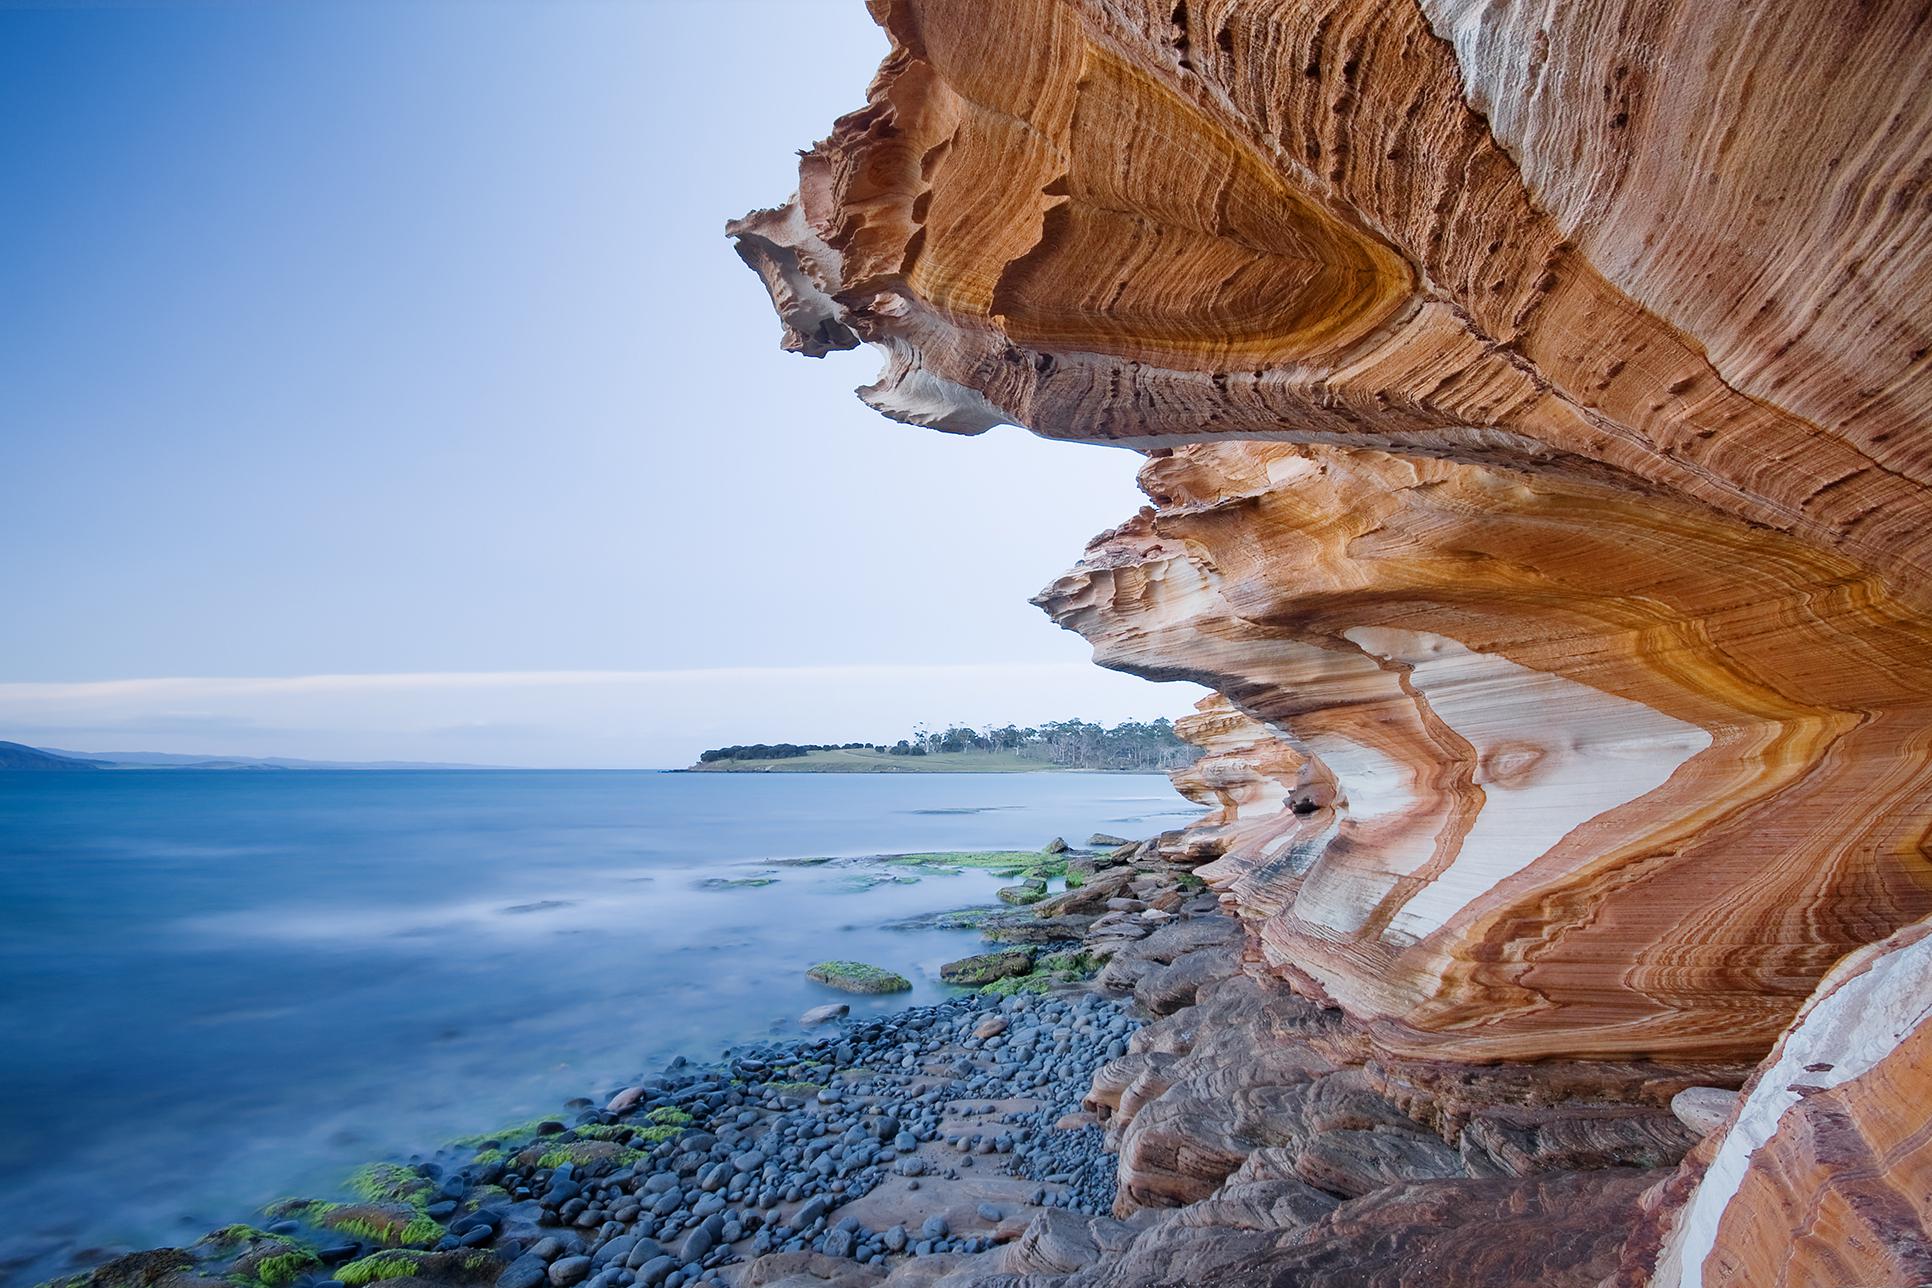 Painted cliffs maria island tasmania australia - (#126549) - High ...